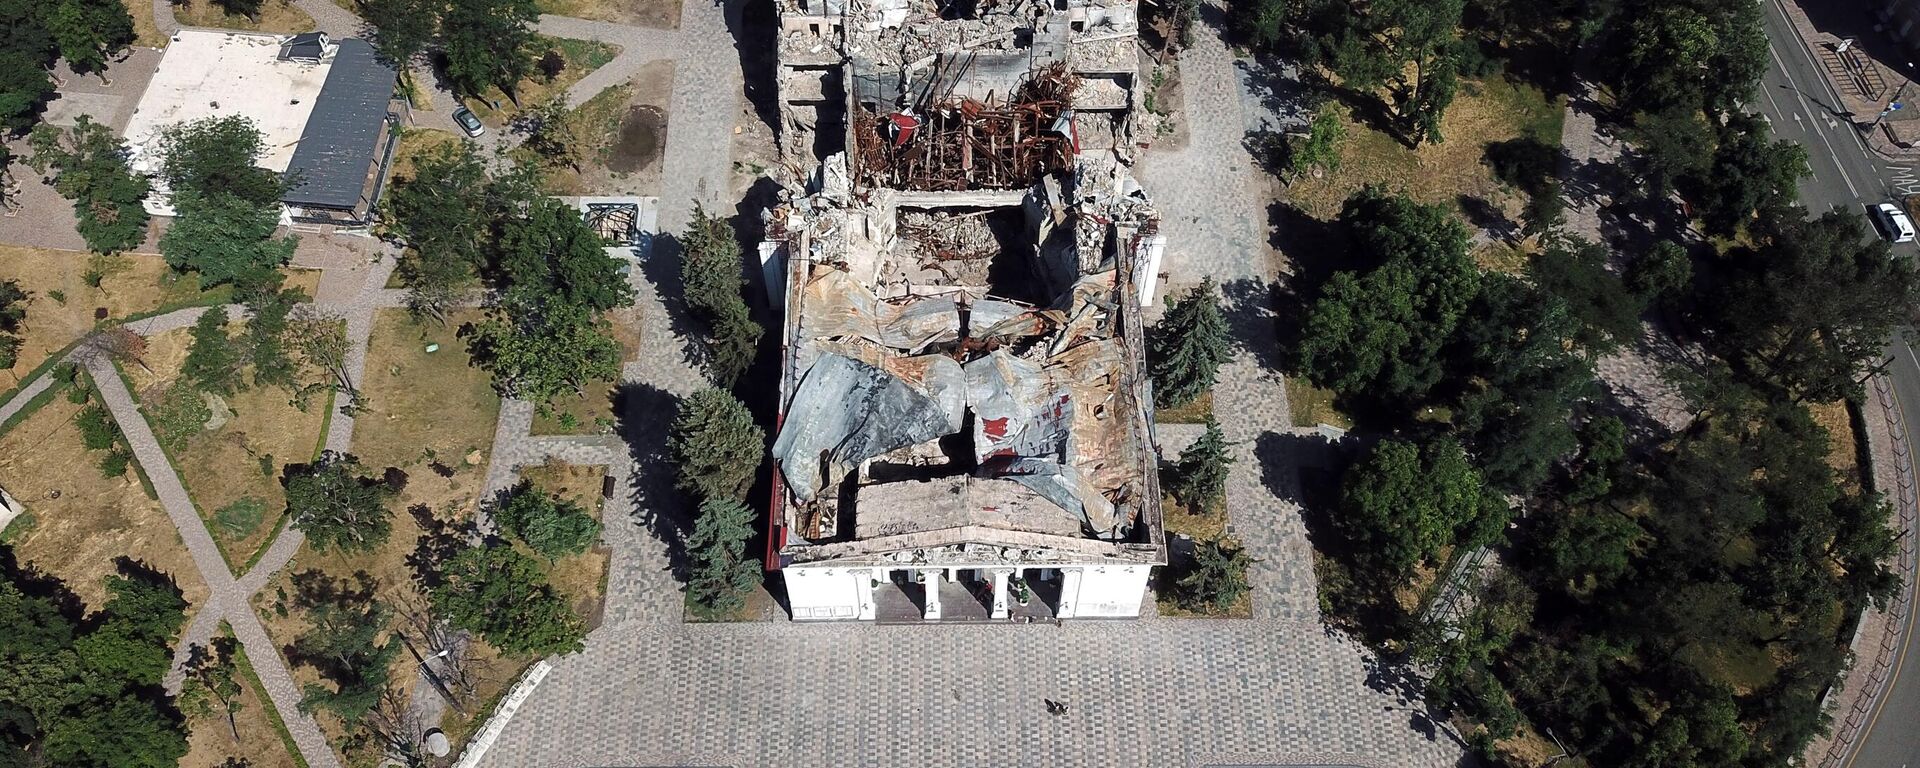 El edificio del Teatro Regional Académico de Donetsk destruido en Mariupol - Sputnik Mundo, 1920, 30.07.2022